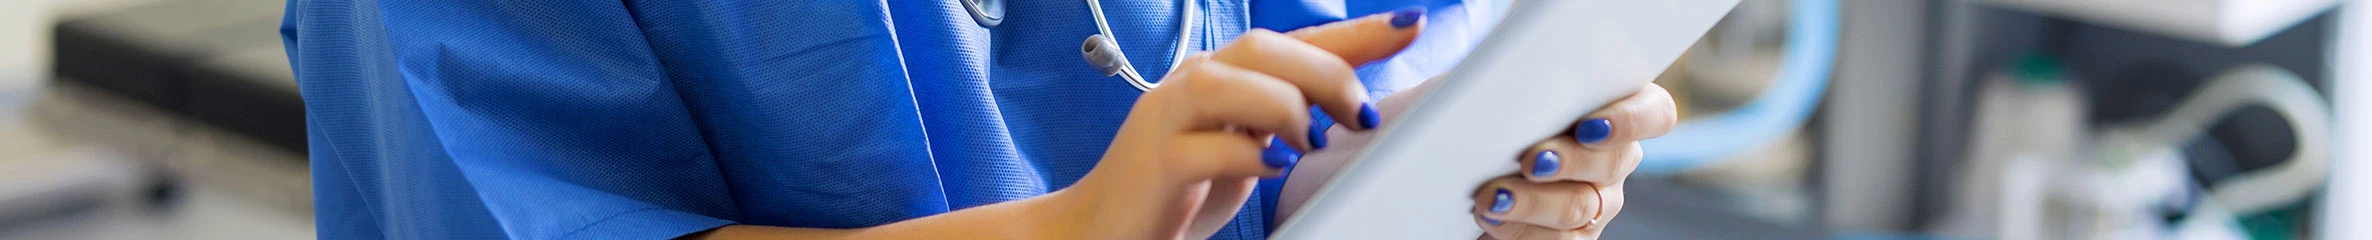 Eine Krankenschwester steht in einem Behandlungszimmer und tippt auf ein Tablet.